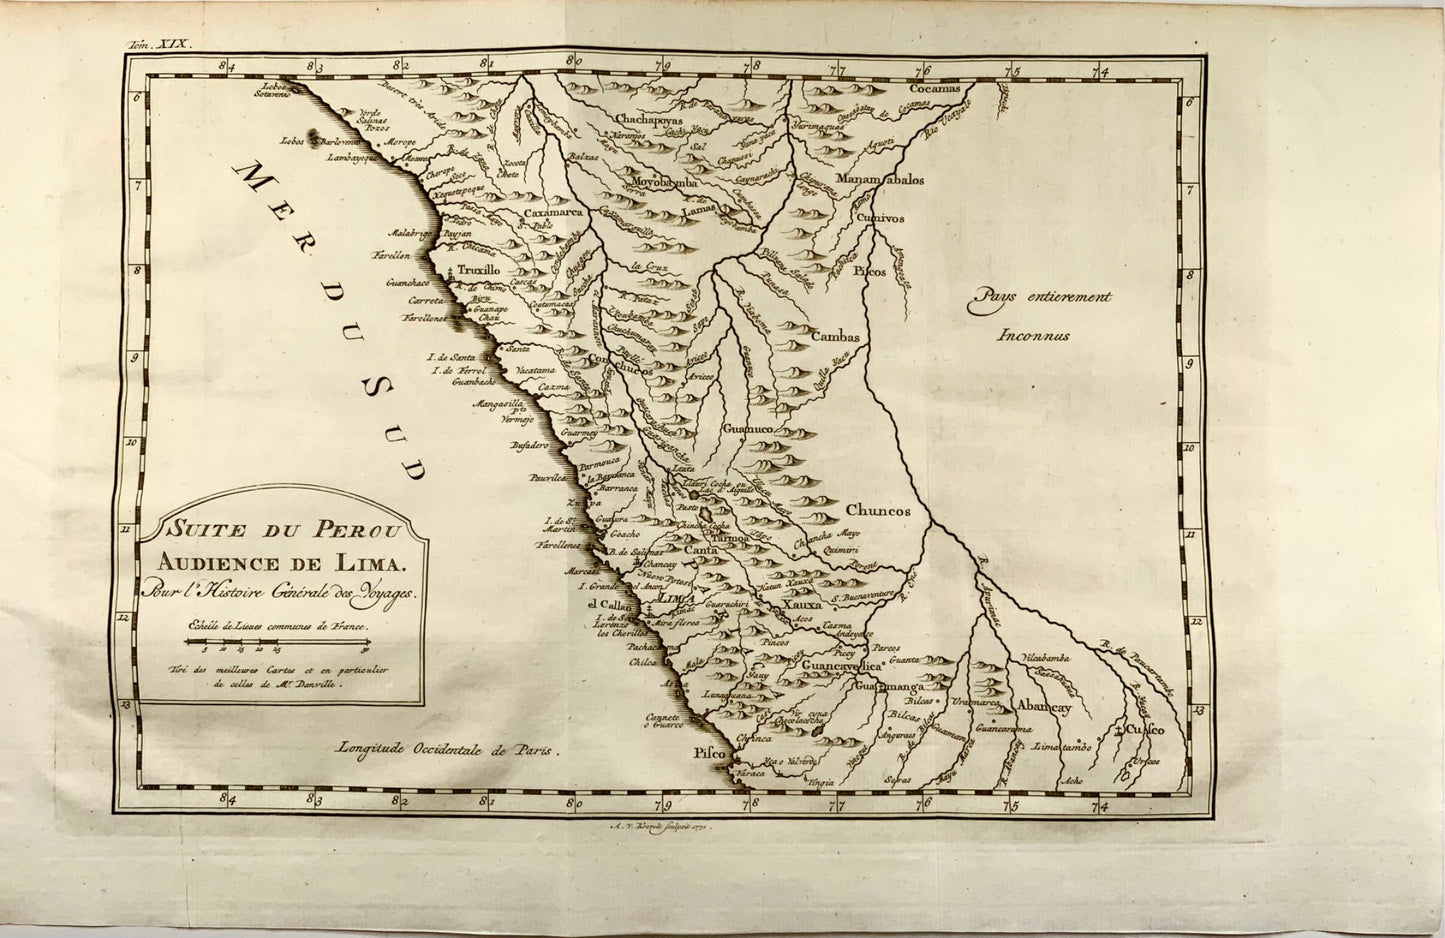 1756 d'Anville mappa della costa del Perù di Bellin, inclusa Lima